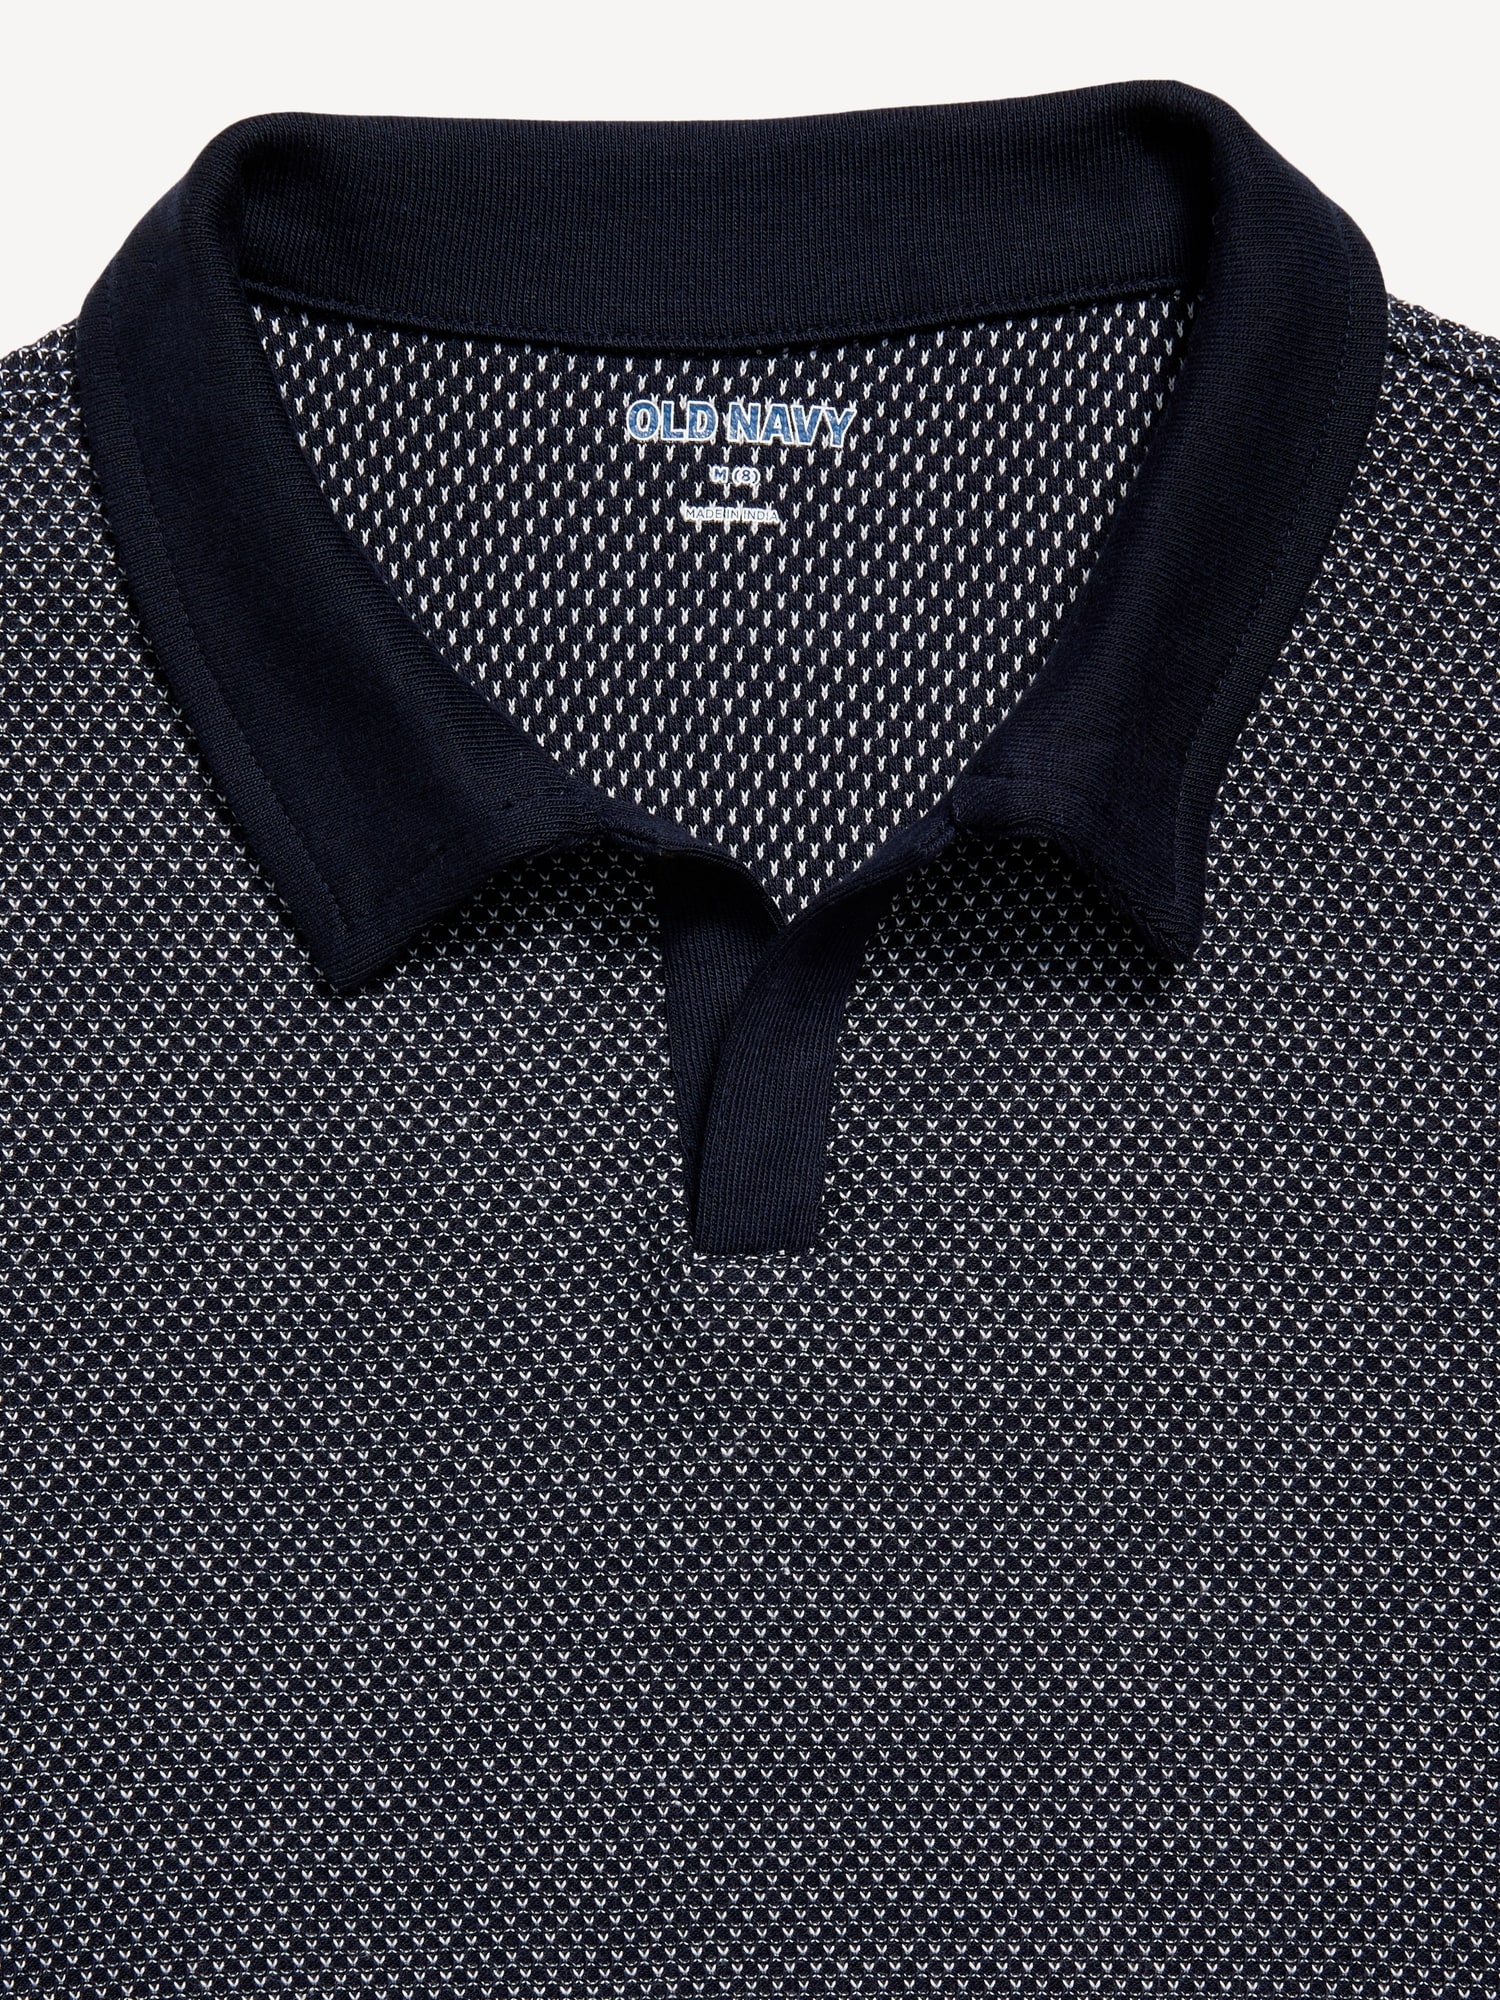 Short-Sleeve Knit Polo Shirt for Boys